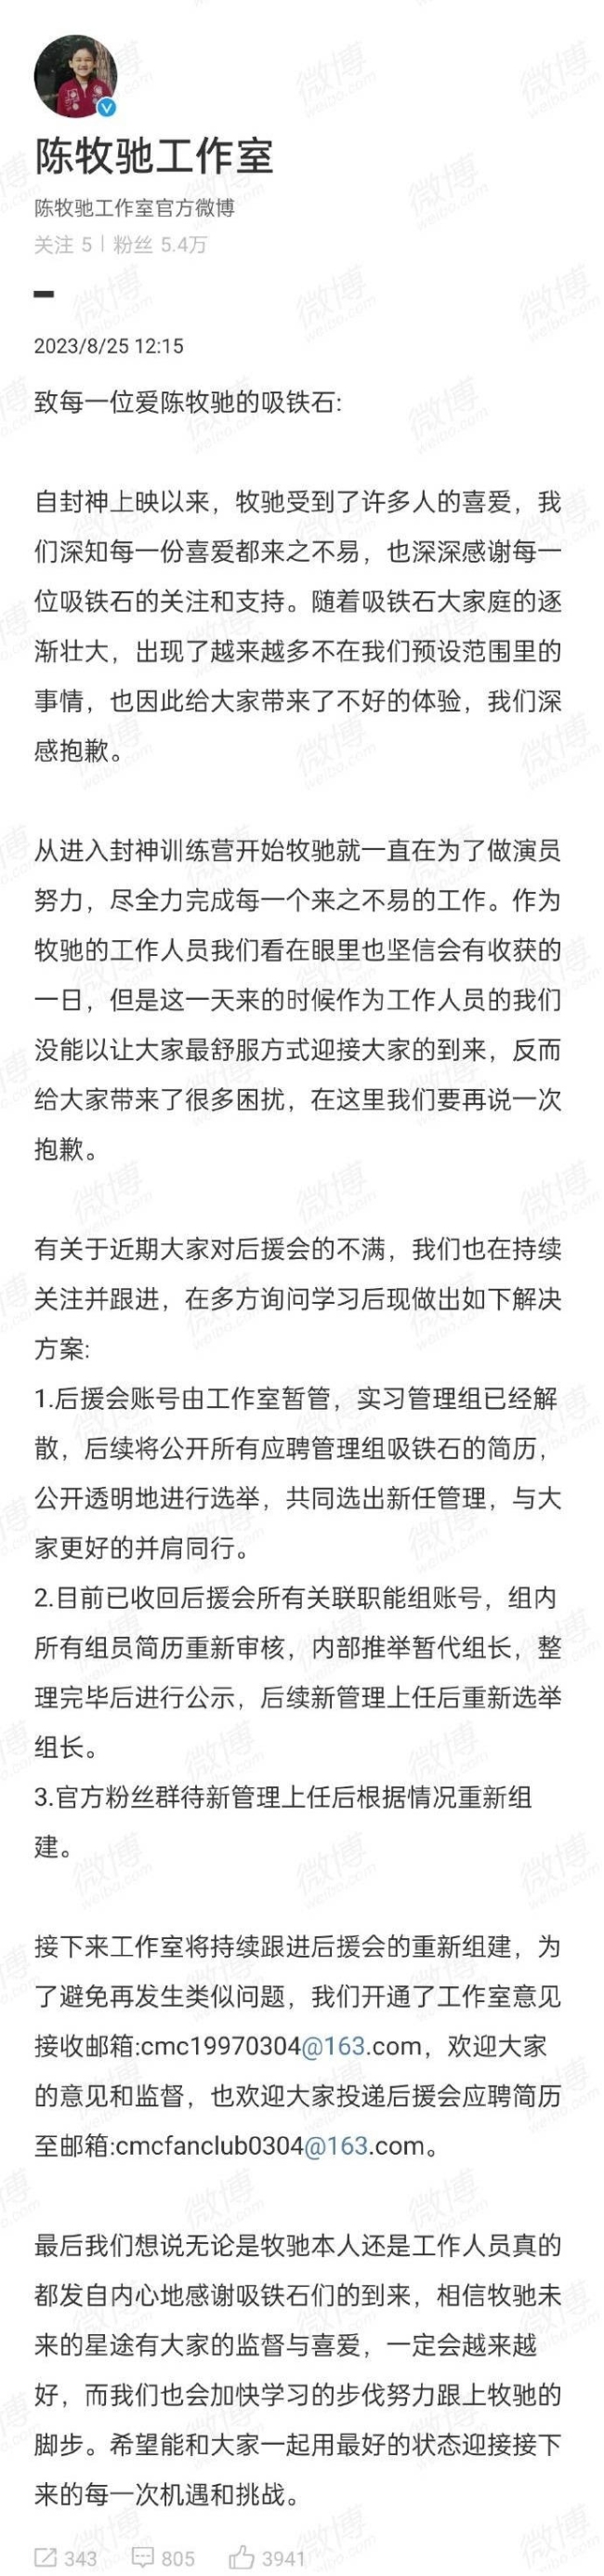 陈牧驰工作室发文表示后援会账号将由其暂管